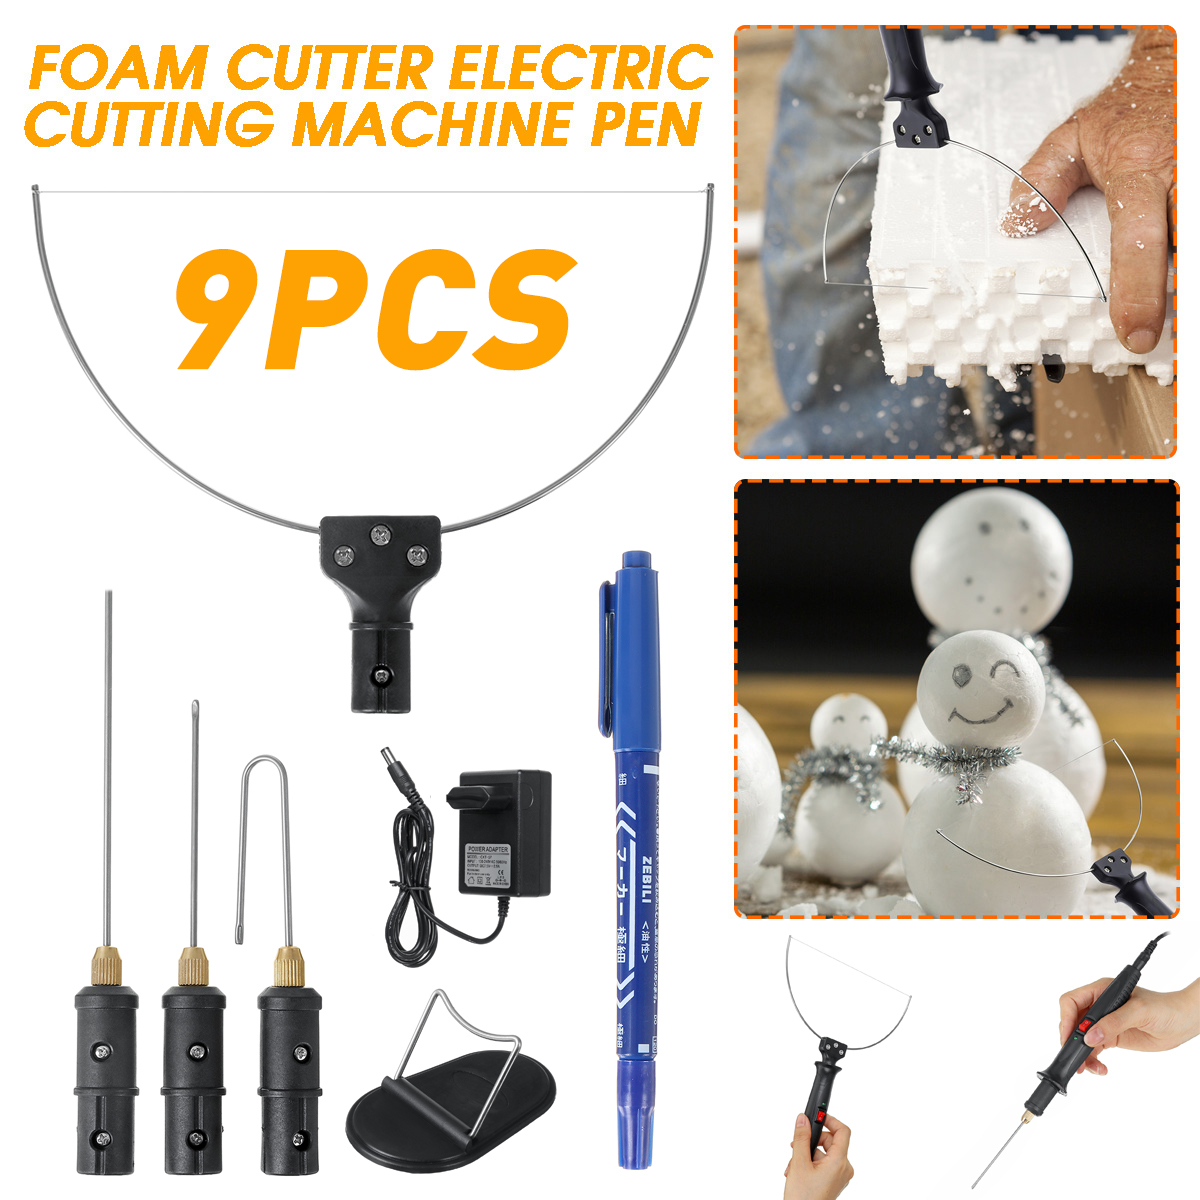 Electric-Foam-Cutter-3-in-1-Foam-Cutter-Electric-Cutting-Machine-Pen-Tools-Kit-18W-Styrofoam-Cutting-1843526-14